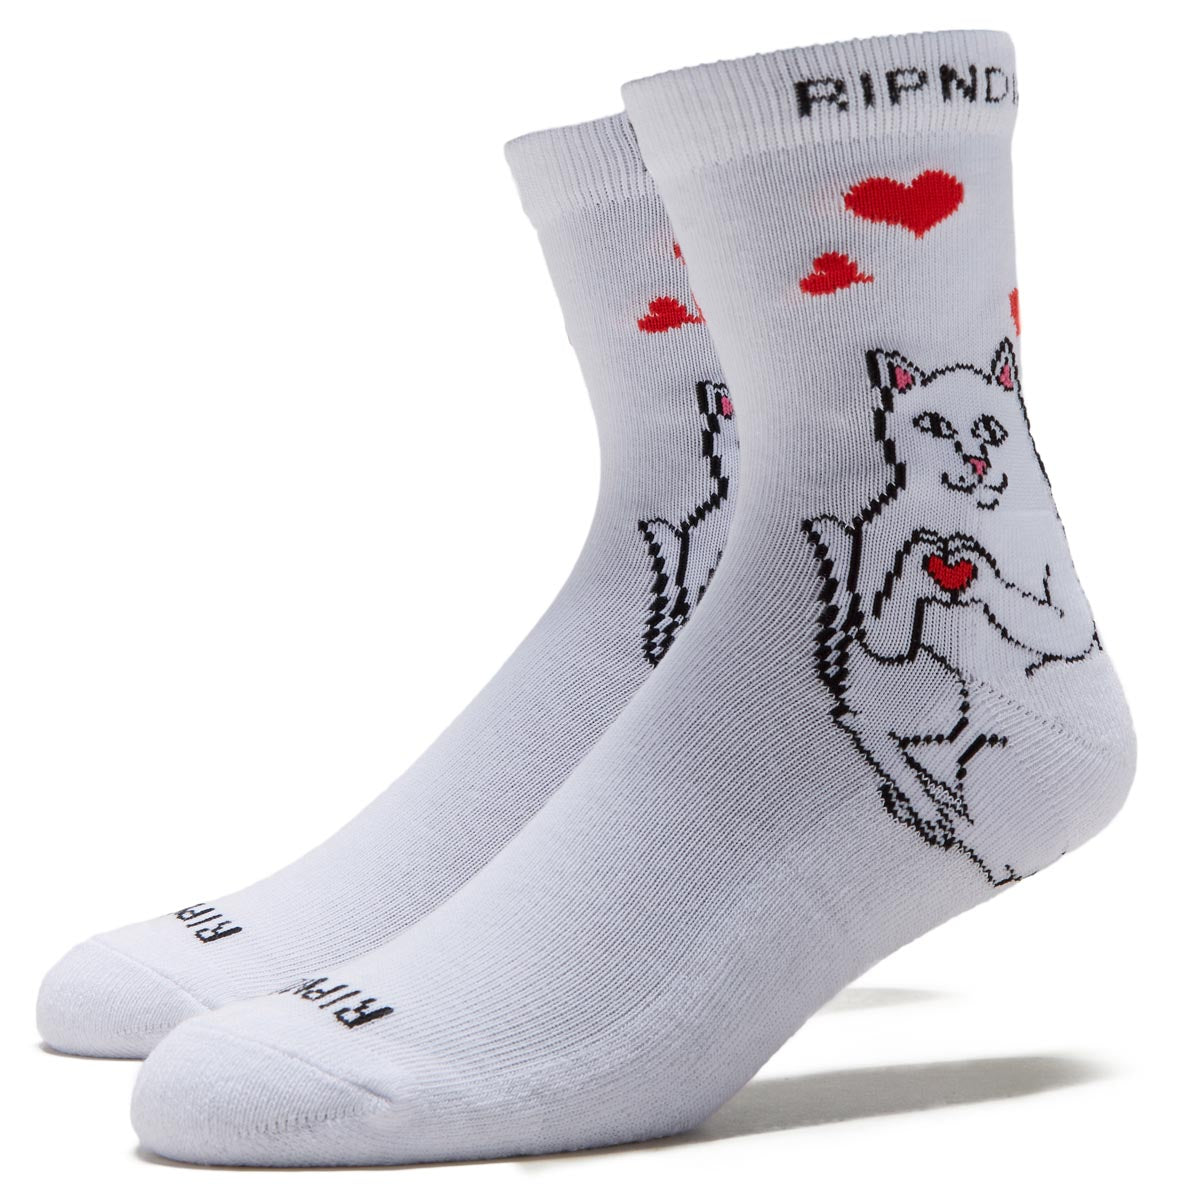 RIPNDIP Nermal Loves Mid Socks - White image 1